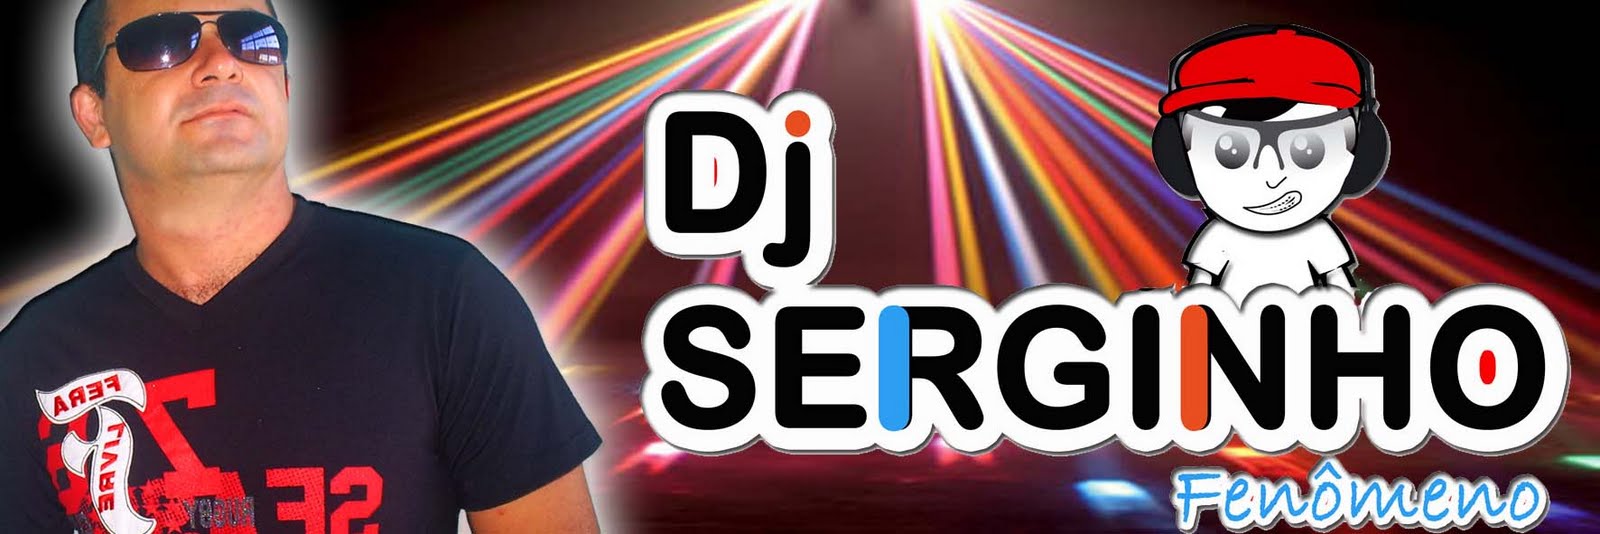 DJ Serginho Fenômeno